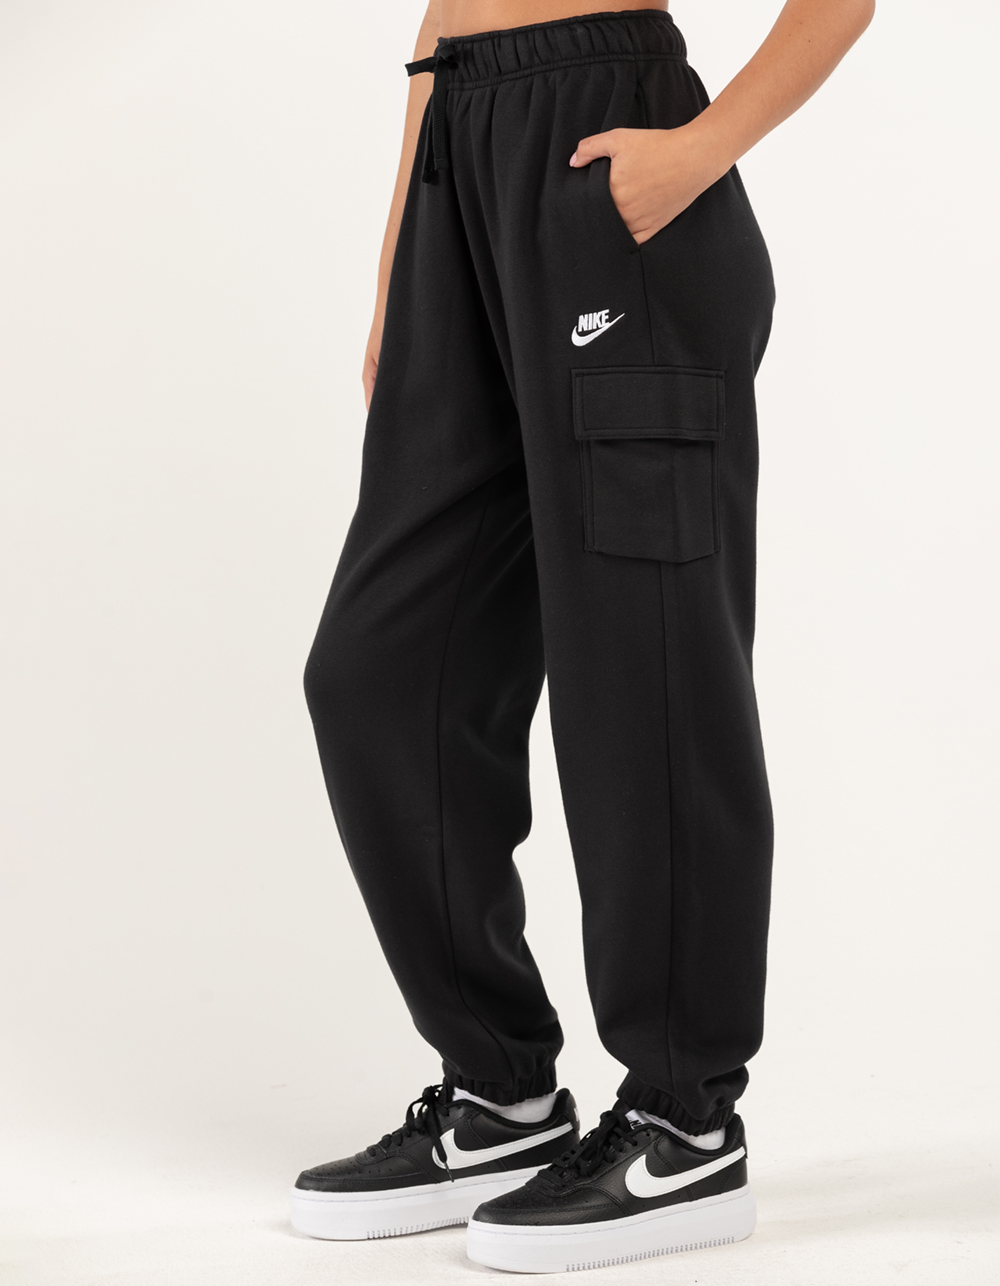 NIKE Sportswear Essentials Club Fleece Womens Cargo Sweatpants Tillys